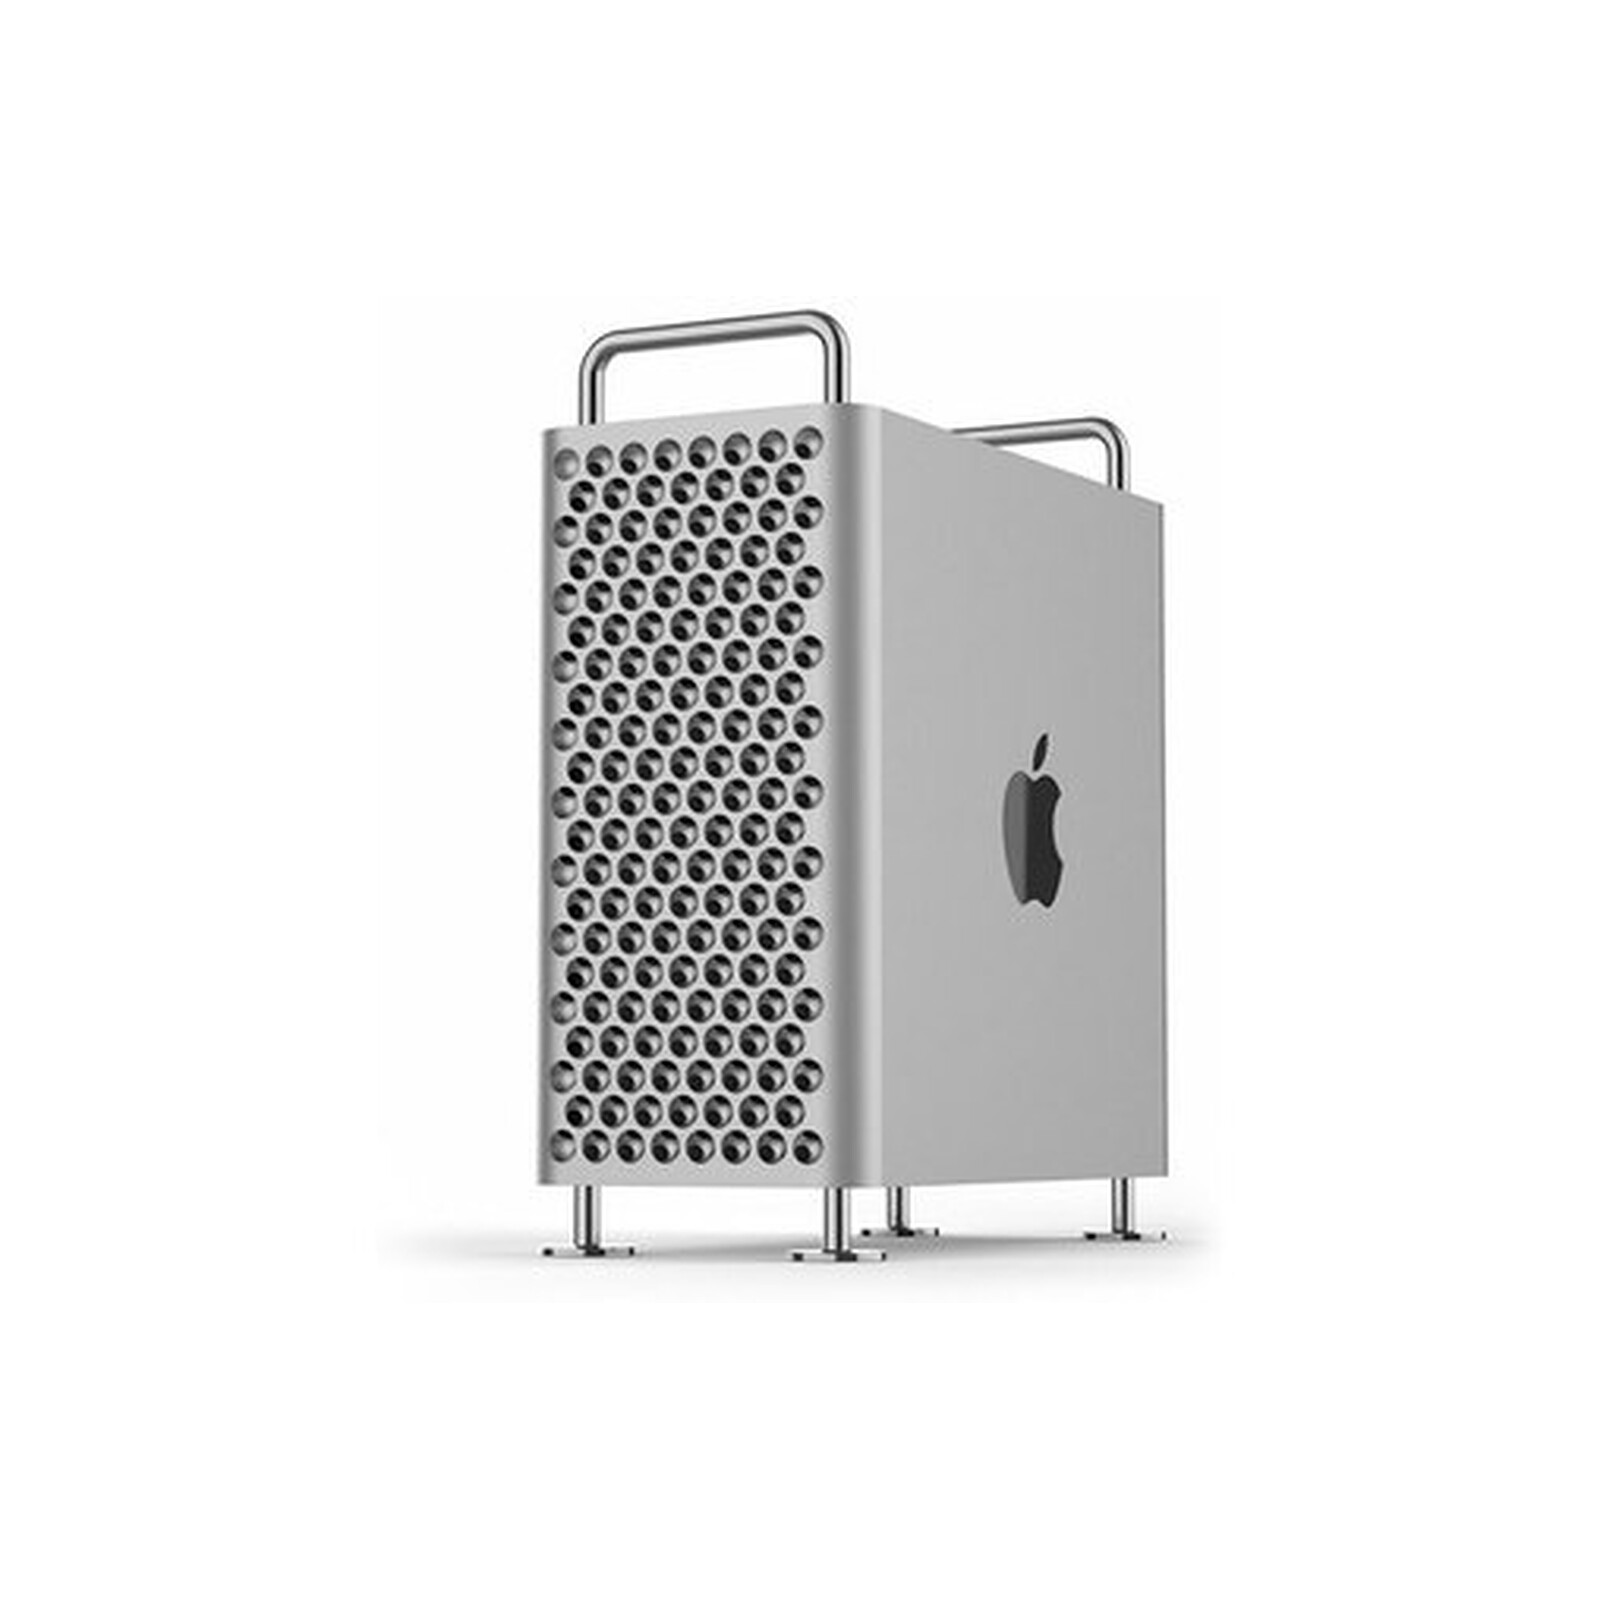 Apple iMac 27 - 3 Ghz - 16 Go RAM - 256 Go SSD (2019) (MRQY2LL/A) ·  Reconditionné - Ordinateur Mac reconditionné - LDLC